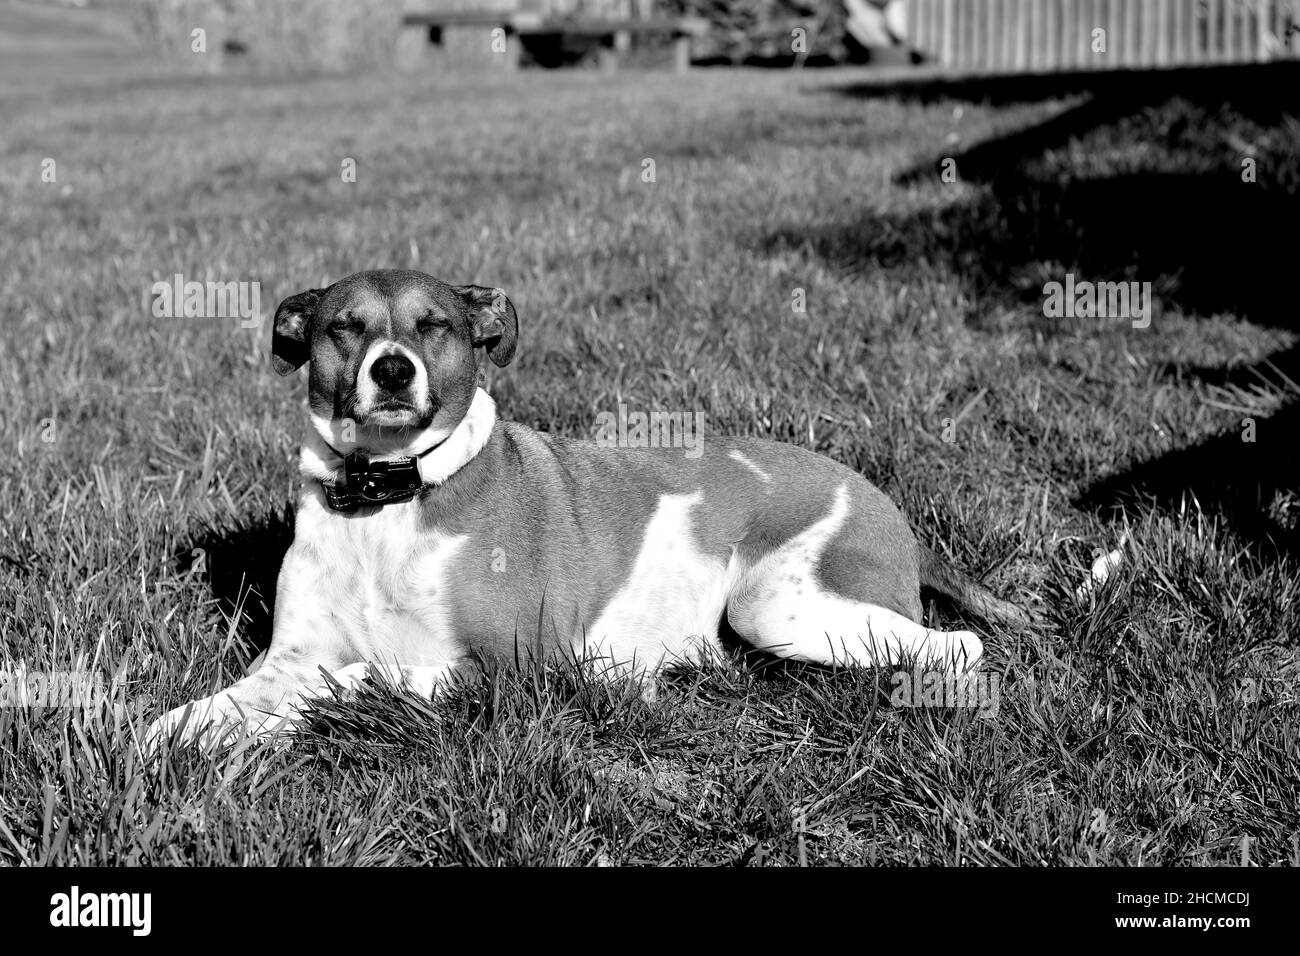 Closeup sparato in B&W di un cane terrier Jack Russel seduto sull'erba con gli occhi chiusi Foto Stock